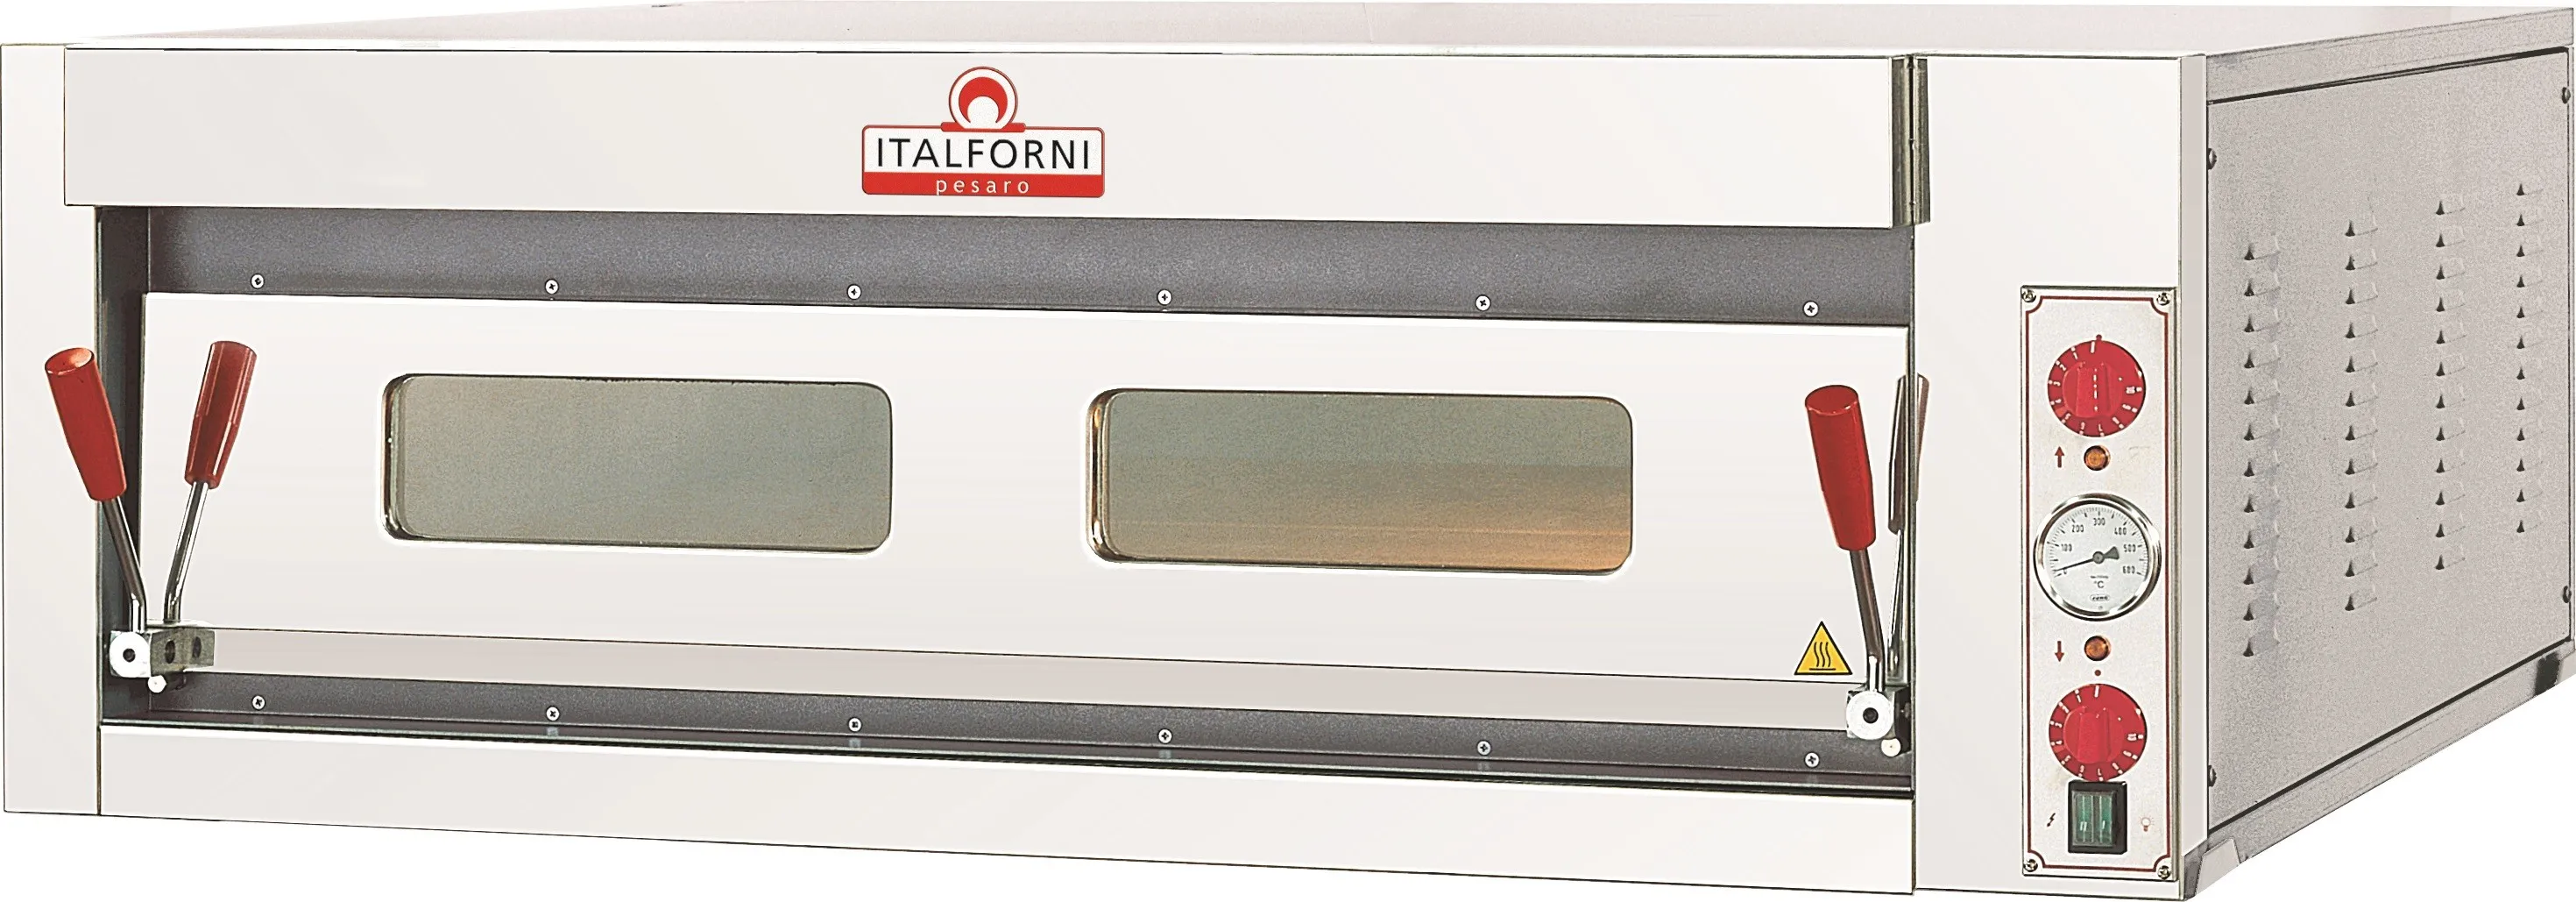 Italforni TKD1 Single deck electric pizza oven